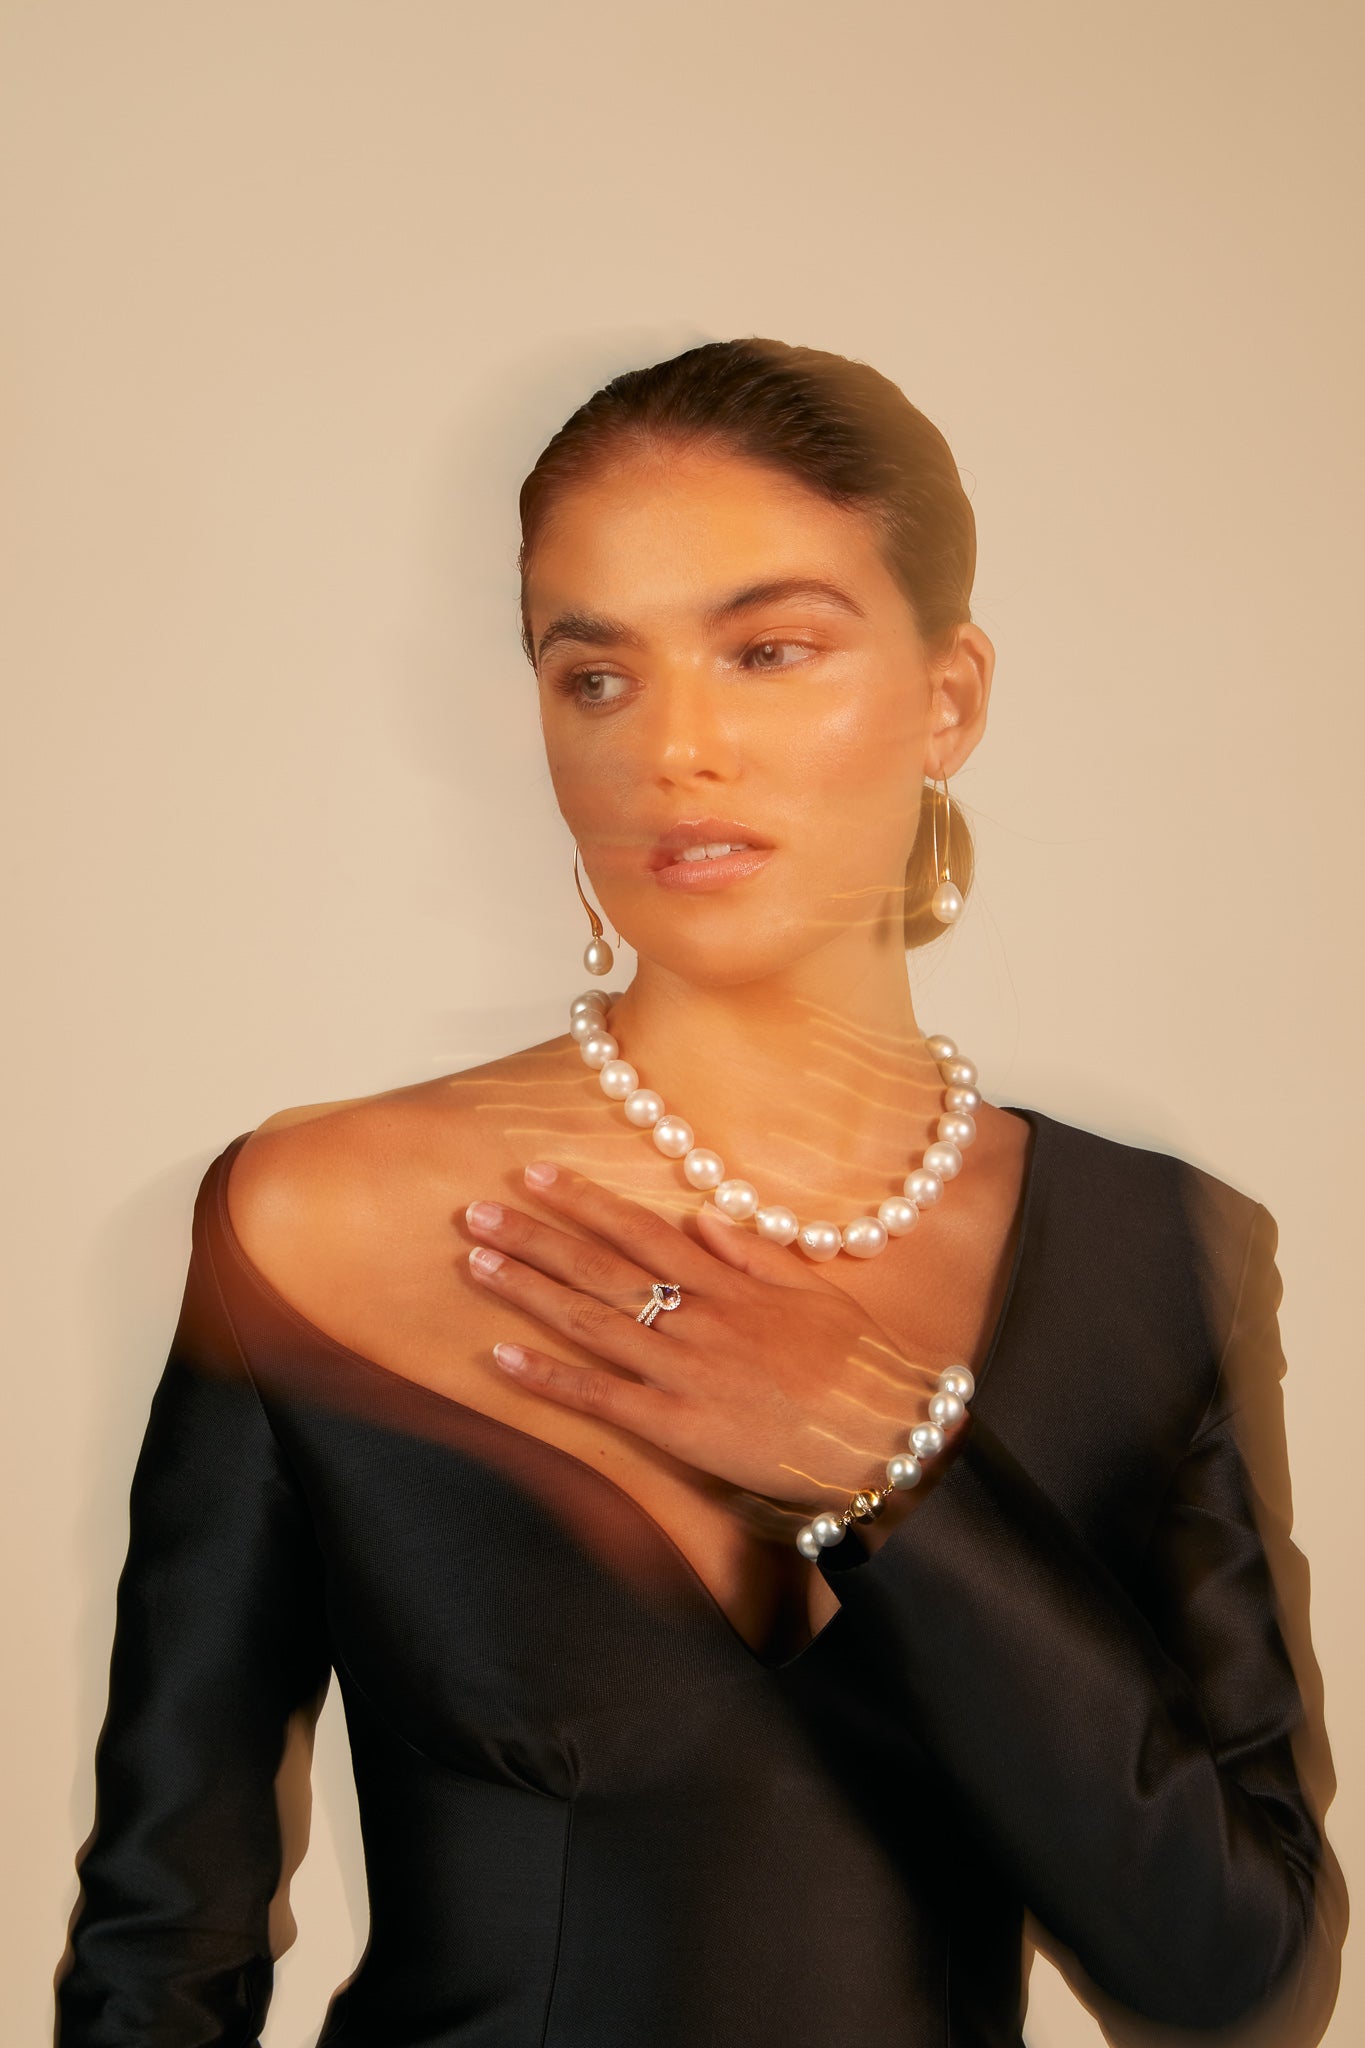 australian south sea pearl jewellery worn by beautiful Australian model